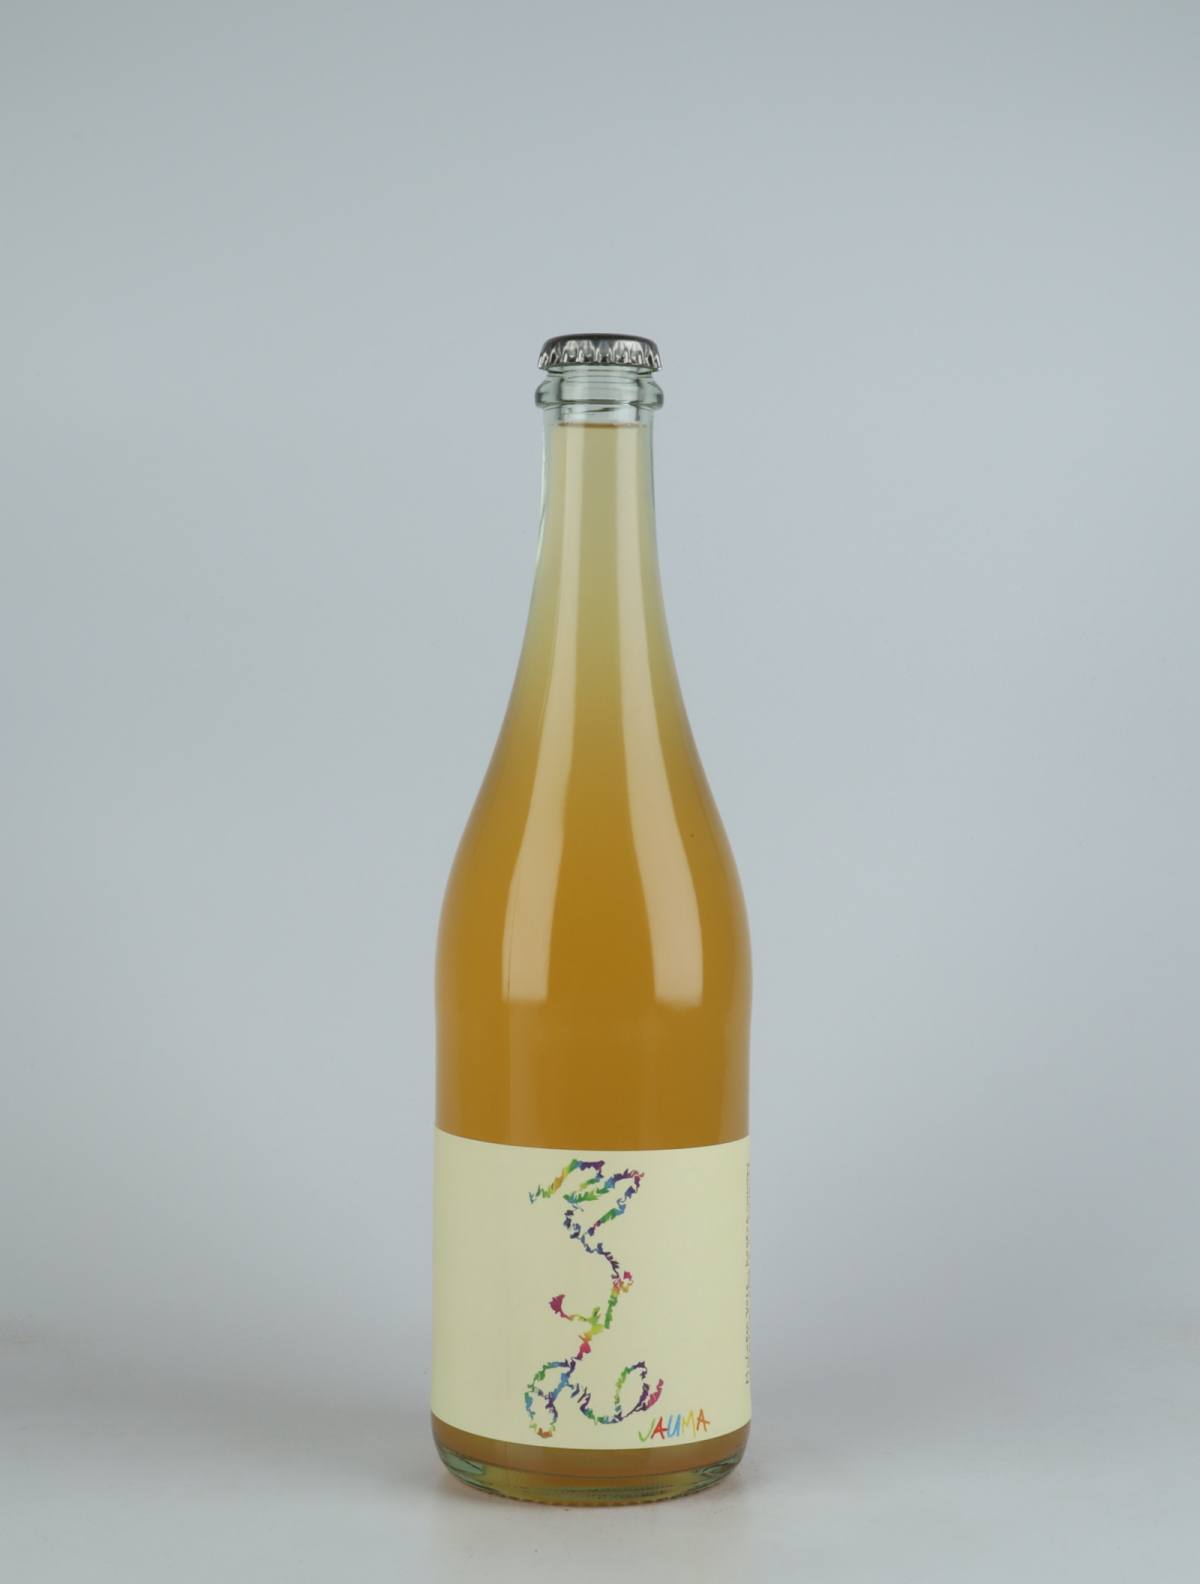 A bottle 2021 Arneis Orange wine from Jauma, Adelaide Hills in 